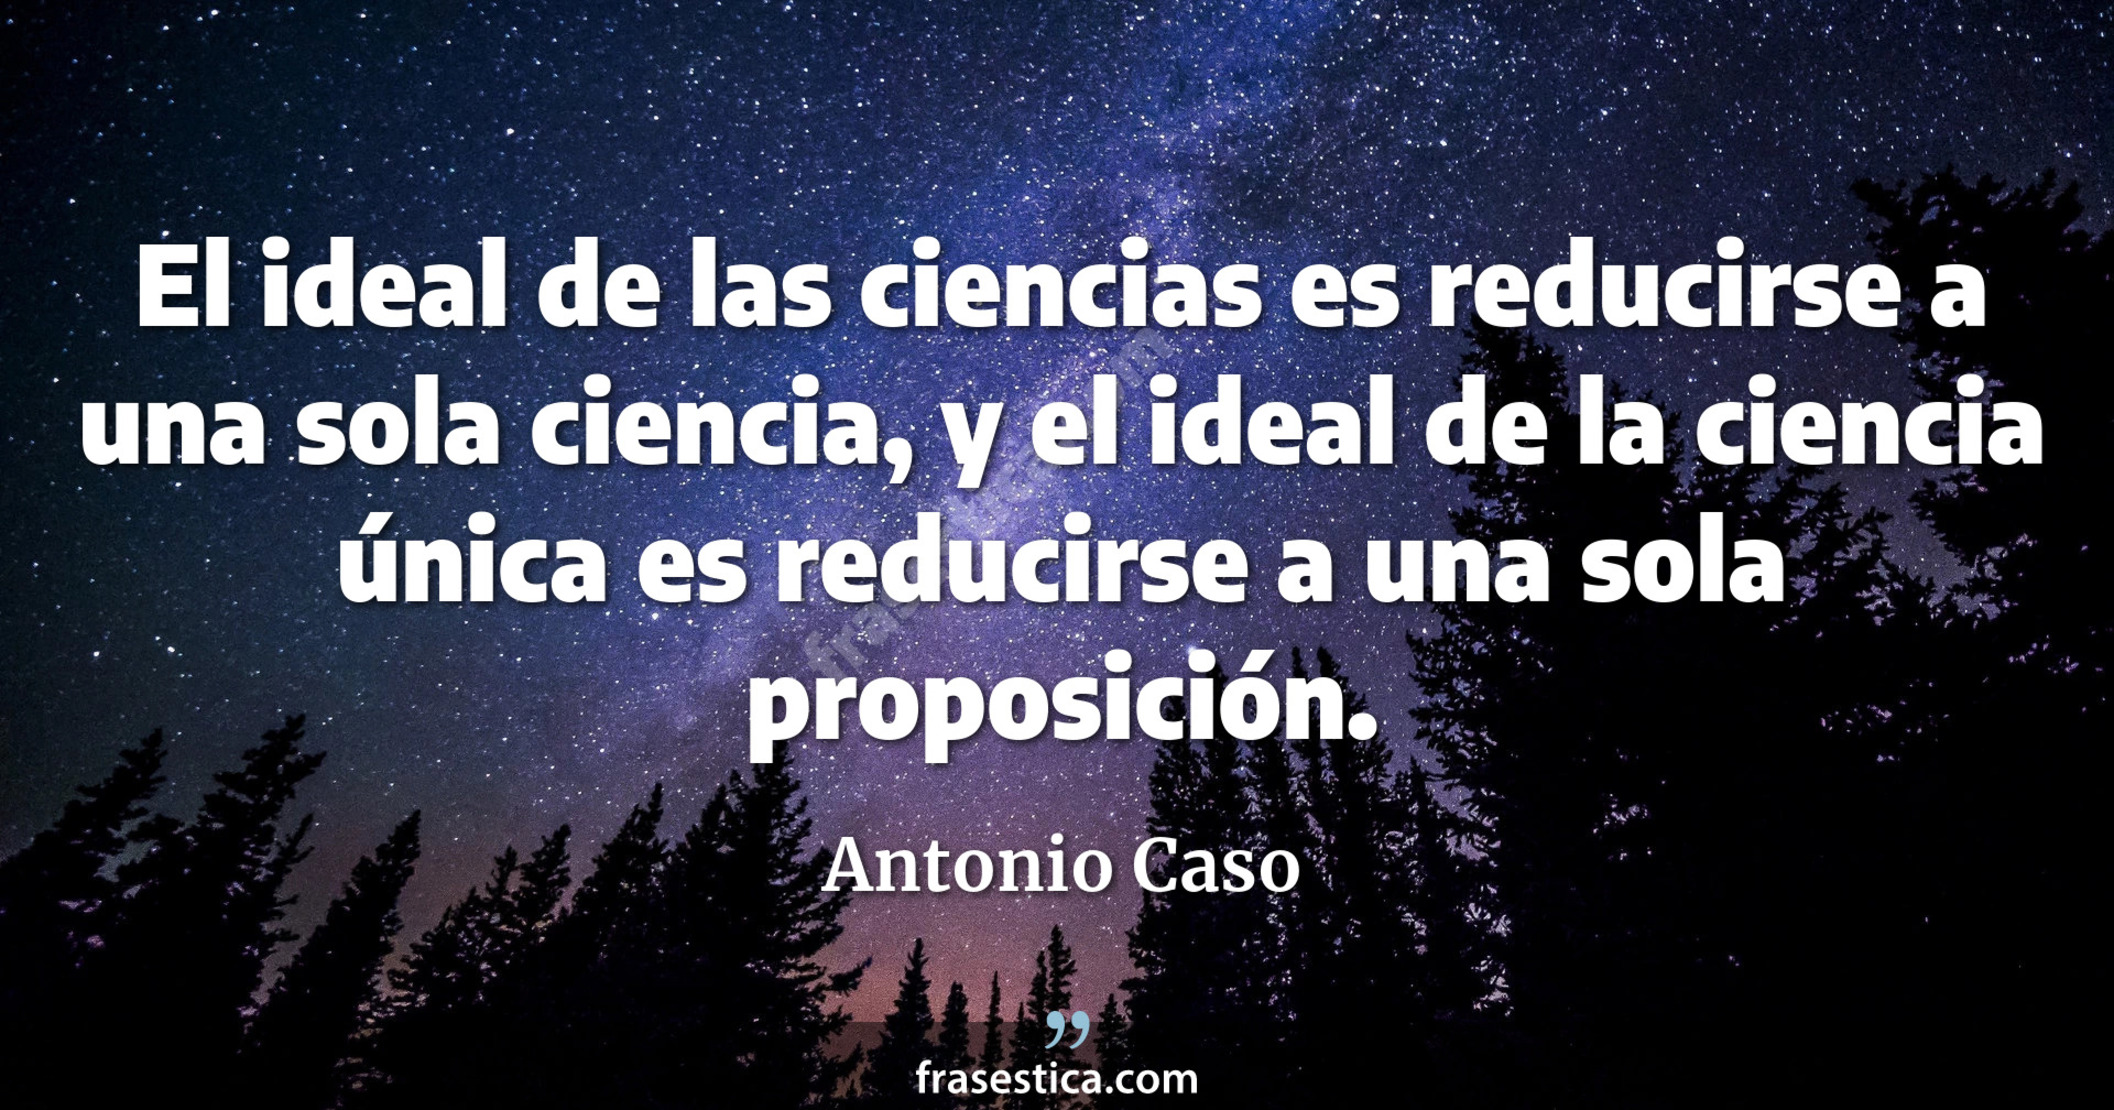 El ideal de las ciencias es reducirse a una sola ciencia, y el ideal de la ciencia única es reducirse a una sola proposición. - Antonio Caso